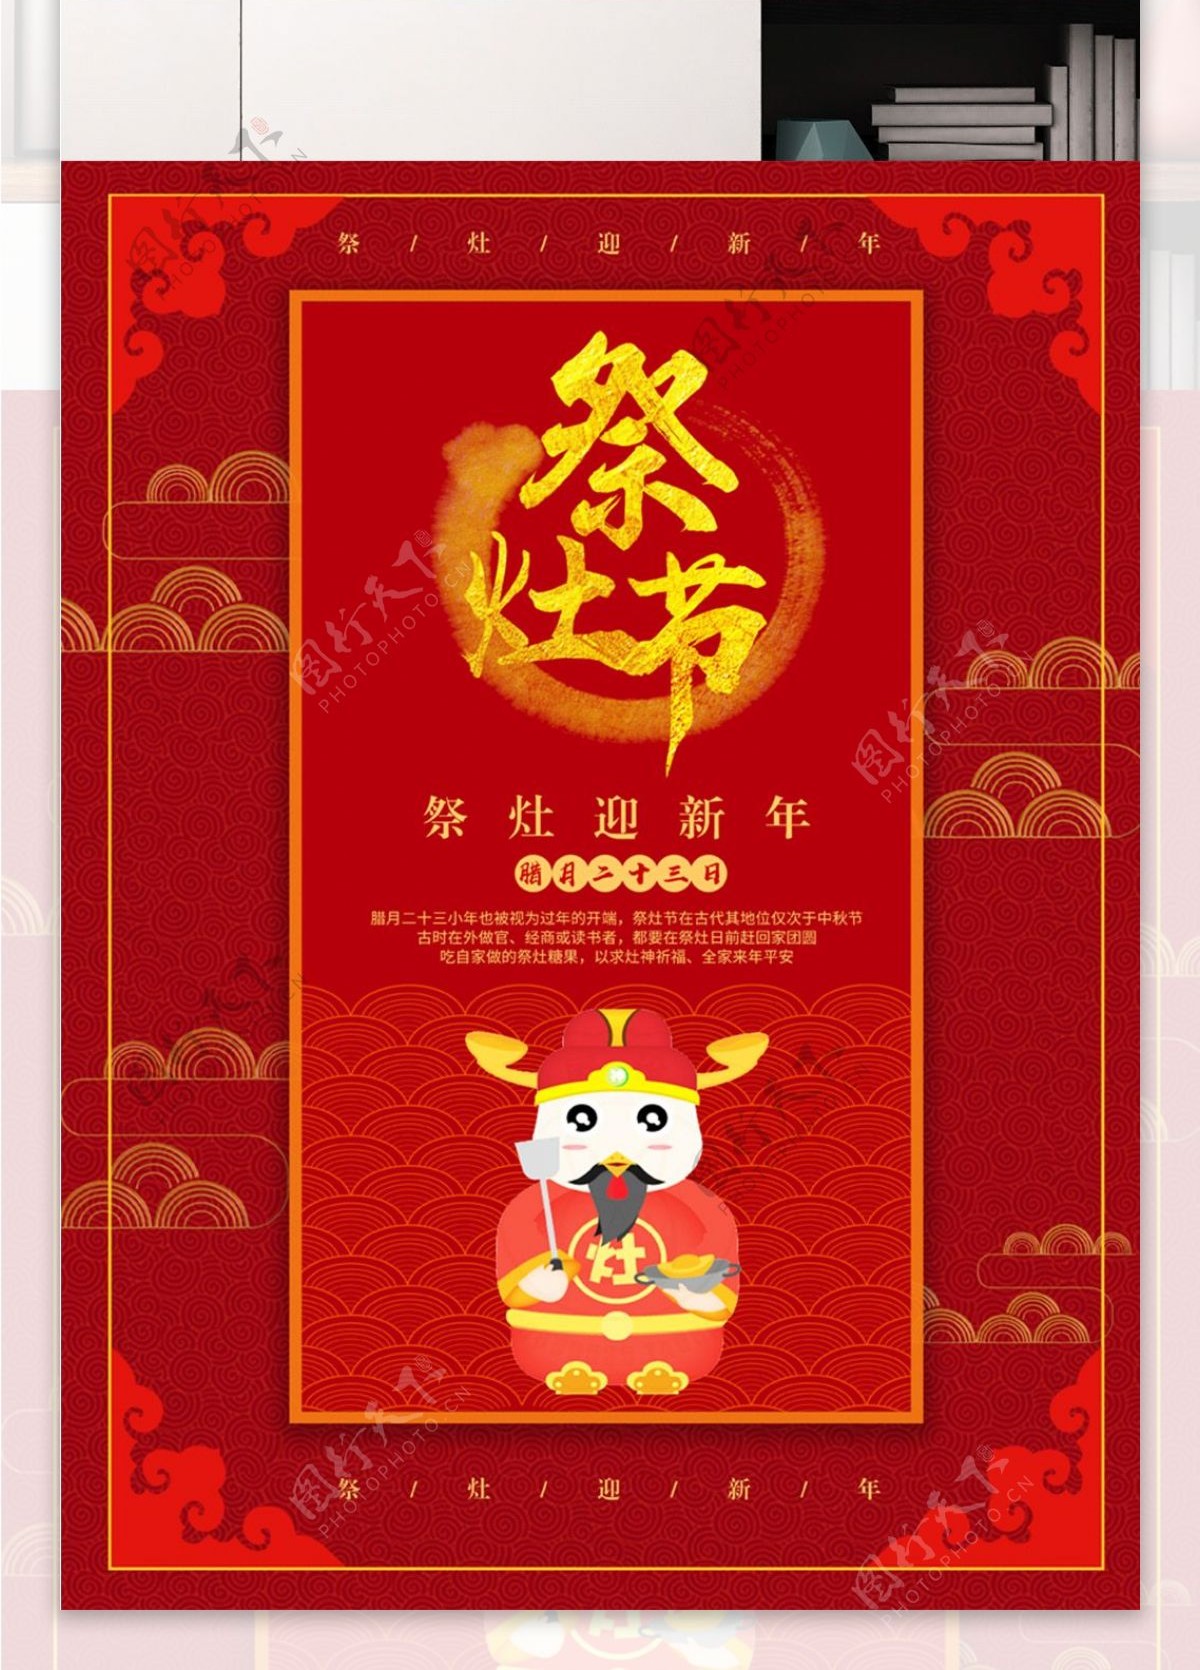 中国红祭灶节海报设计PSD